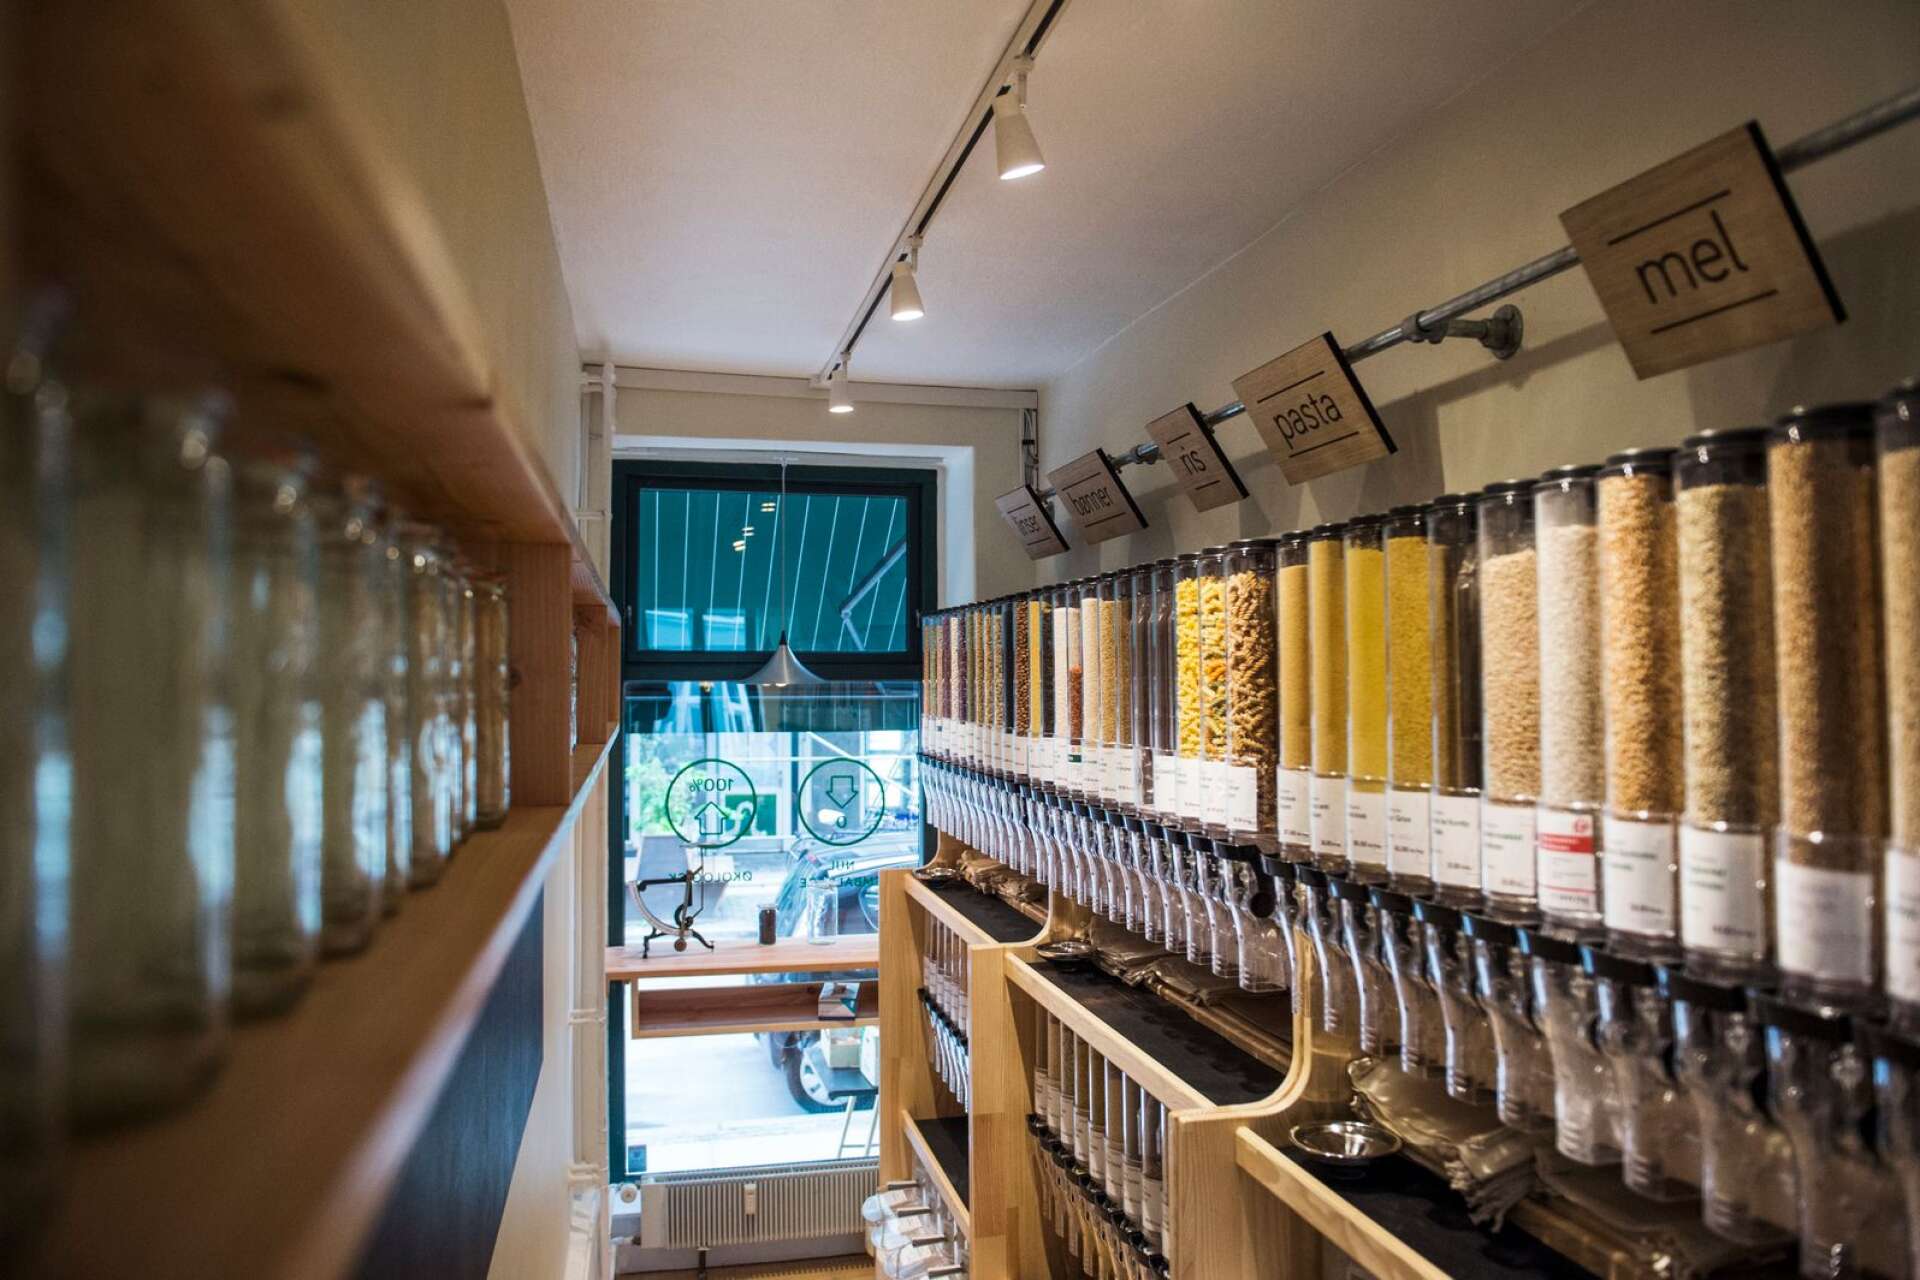 ”Förpackningsfria butiker är ett fenomen som ökar i storstäder”, säger Helén Williams. Här en bild från Skandinaviens första butik av det slaget, som öppnade i Köpenhamn hösten 2016.